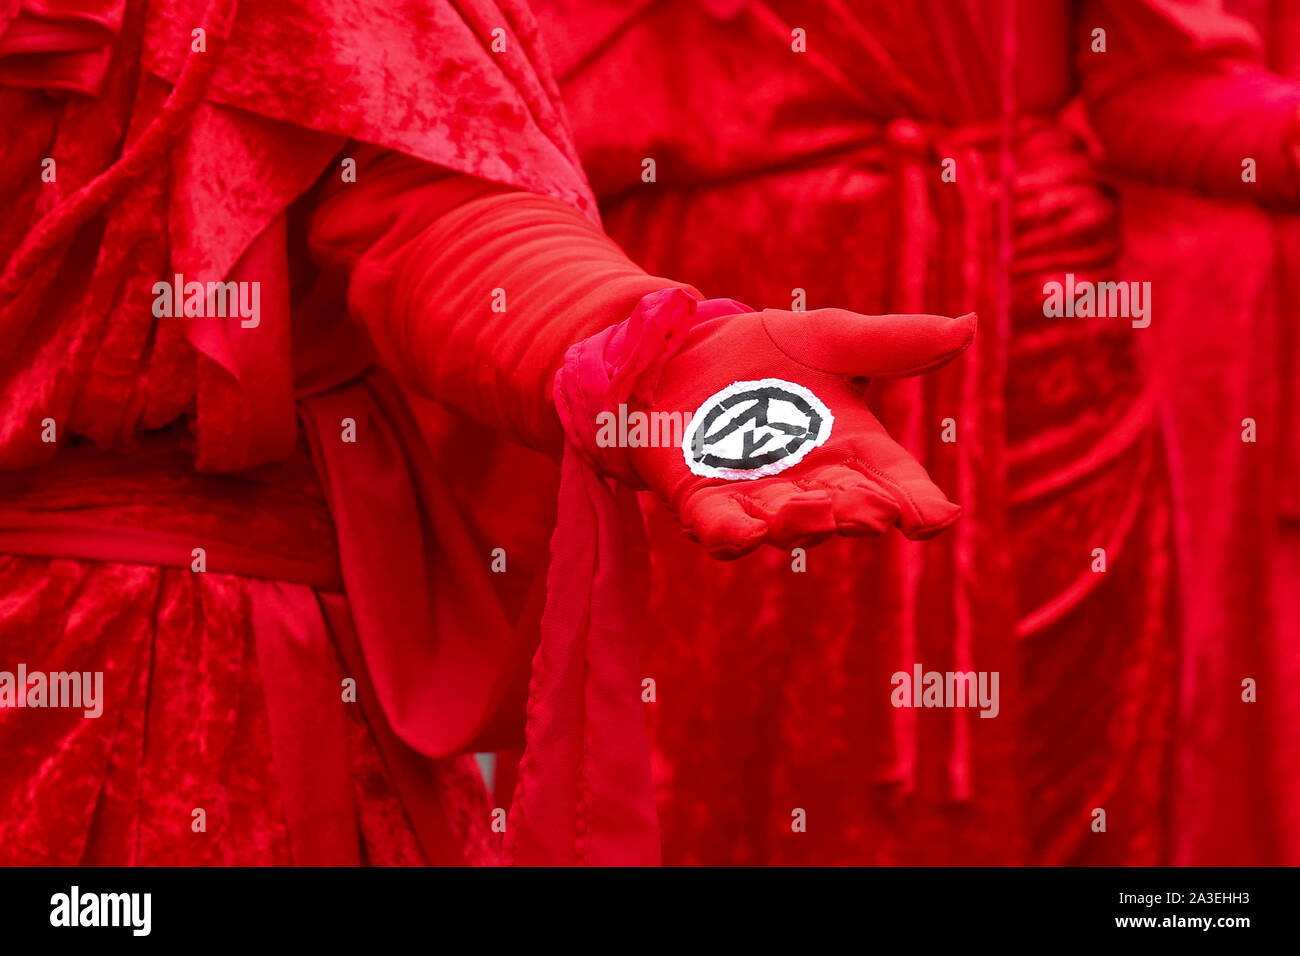 Londres, Reino Unido. 07 Oct, 2019. Un manifestante de extinción movimiento rebelde muestra un símbolo del grupo durante la manifestación. Crédito: Sopa de imágenes limitado/Alamy Live News Foto de stock